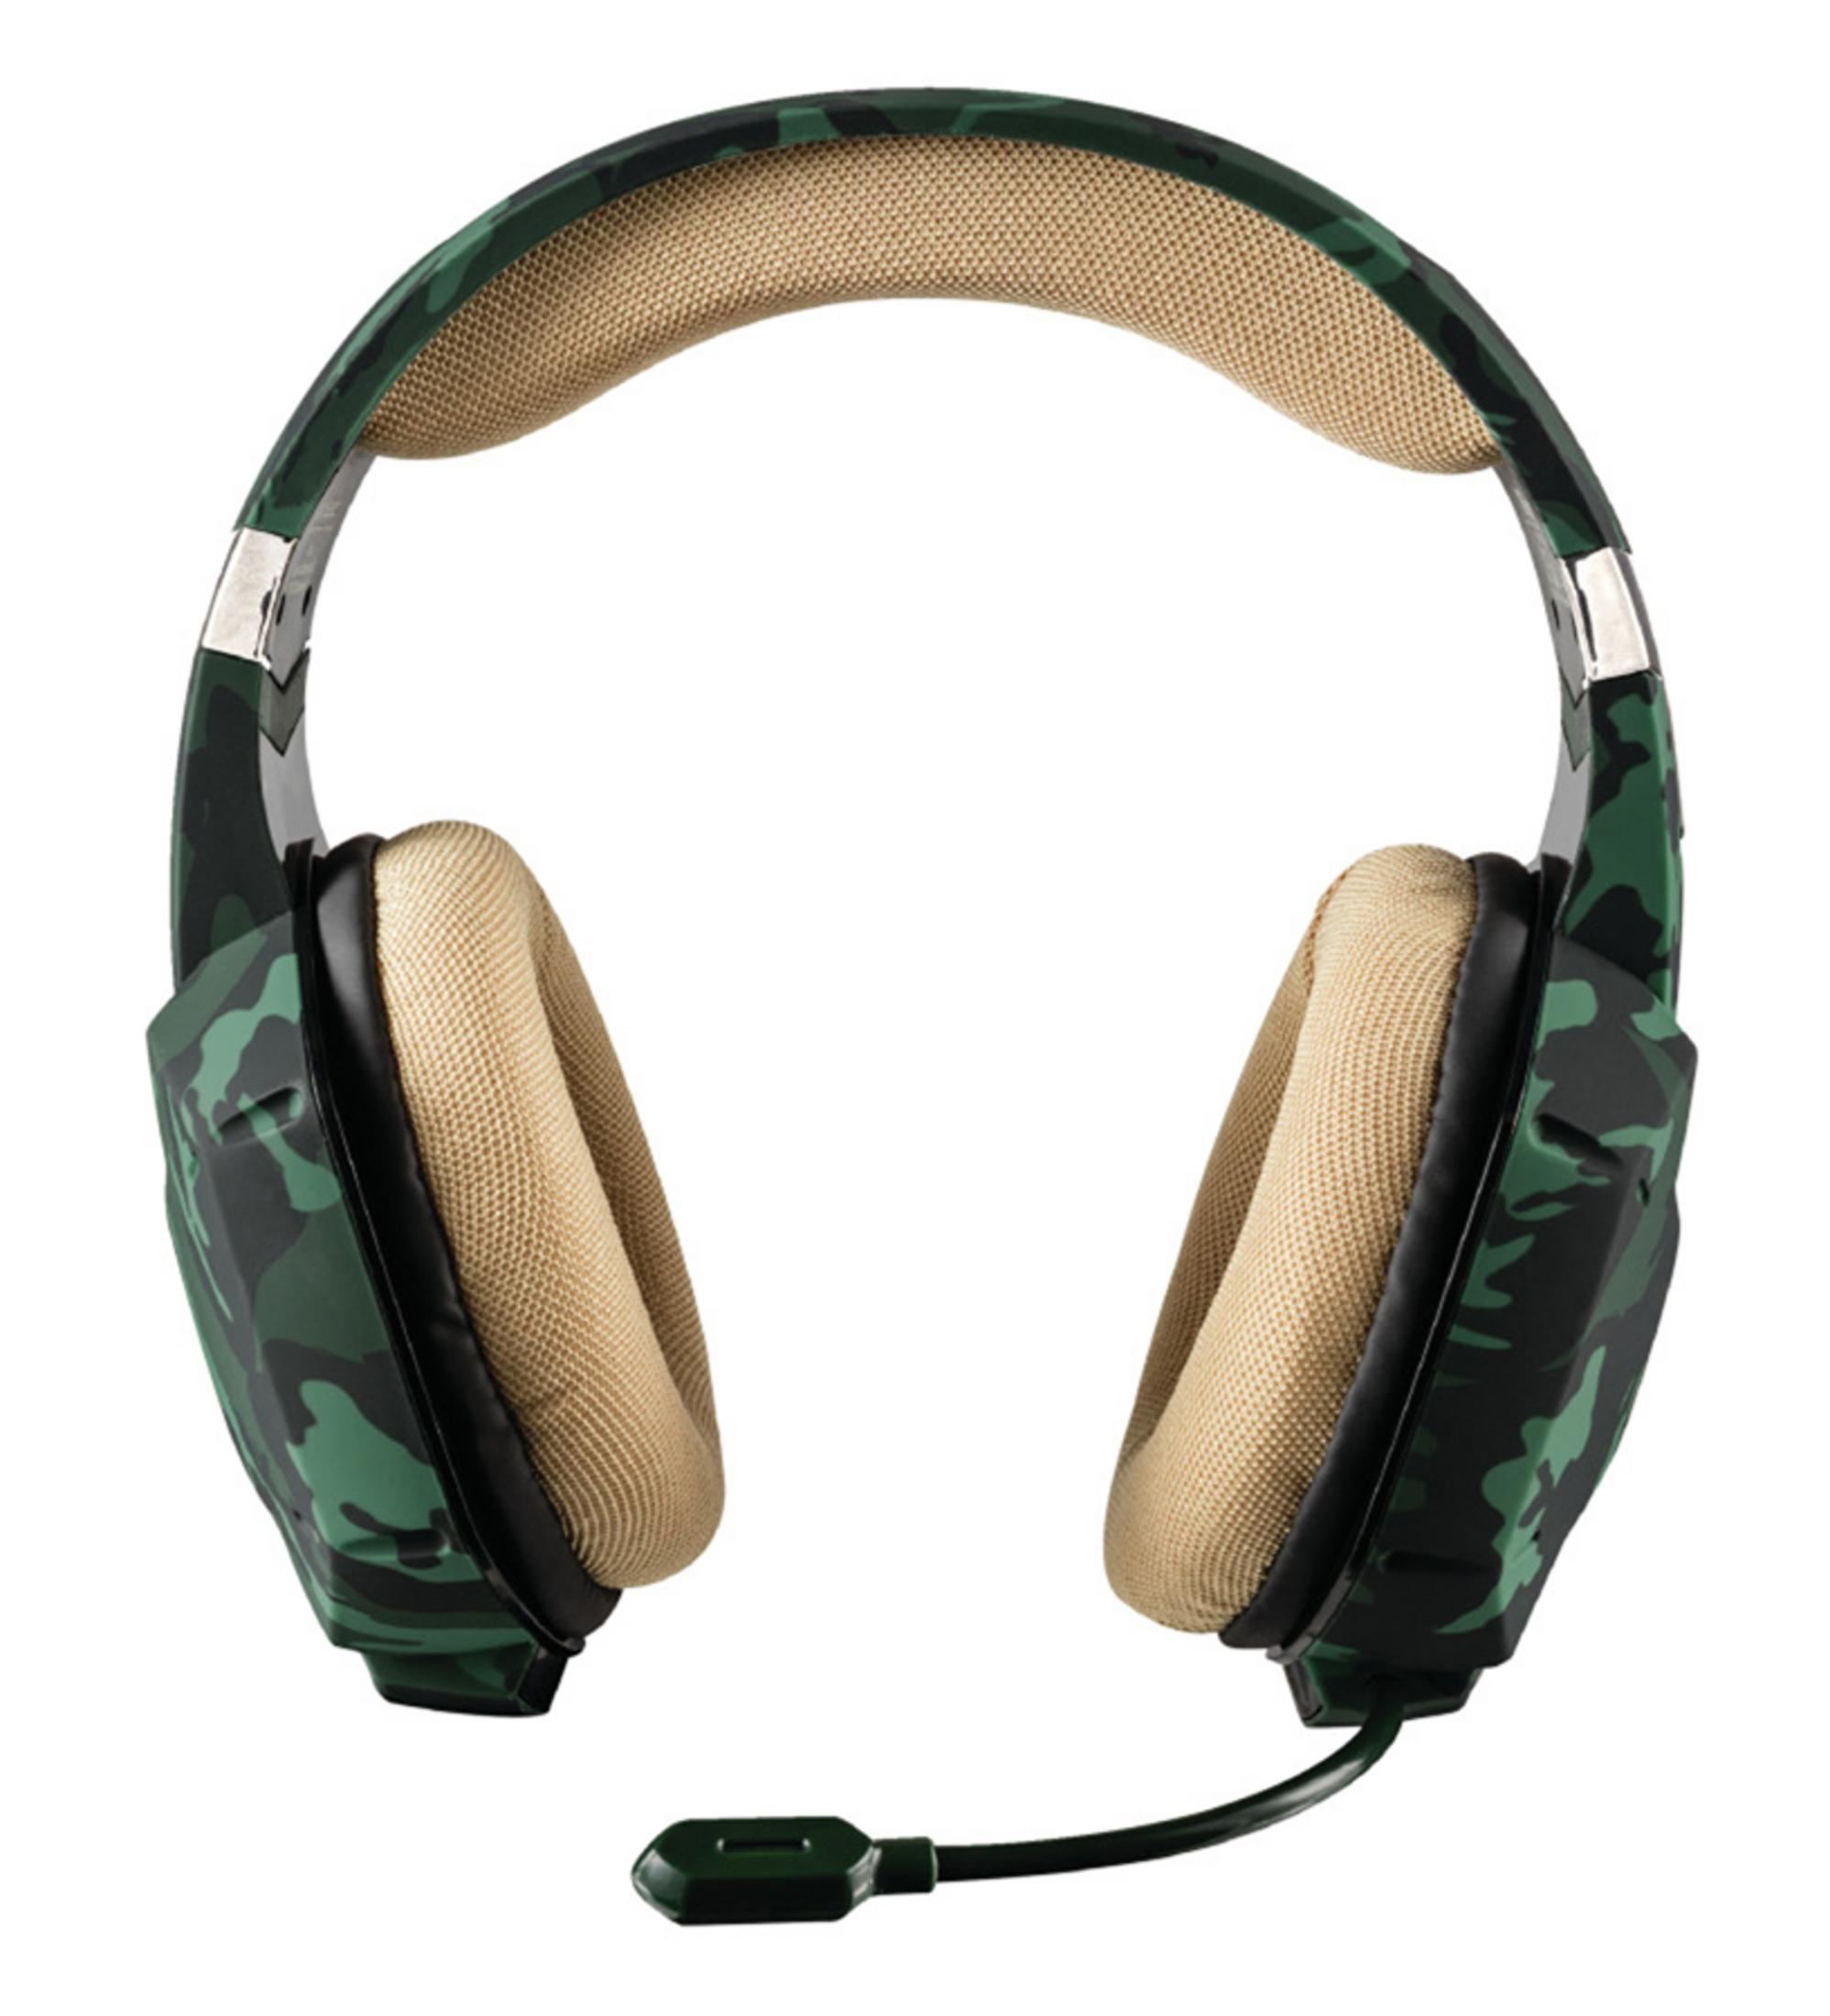 TRUST 20865 In-ear GREEN 322C Headset GXT CAMOUFLAGE, GAMING Gaming HEADSET Grün/Camouflage